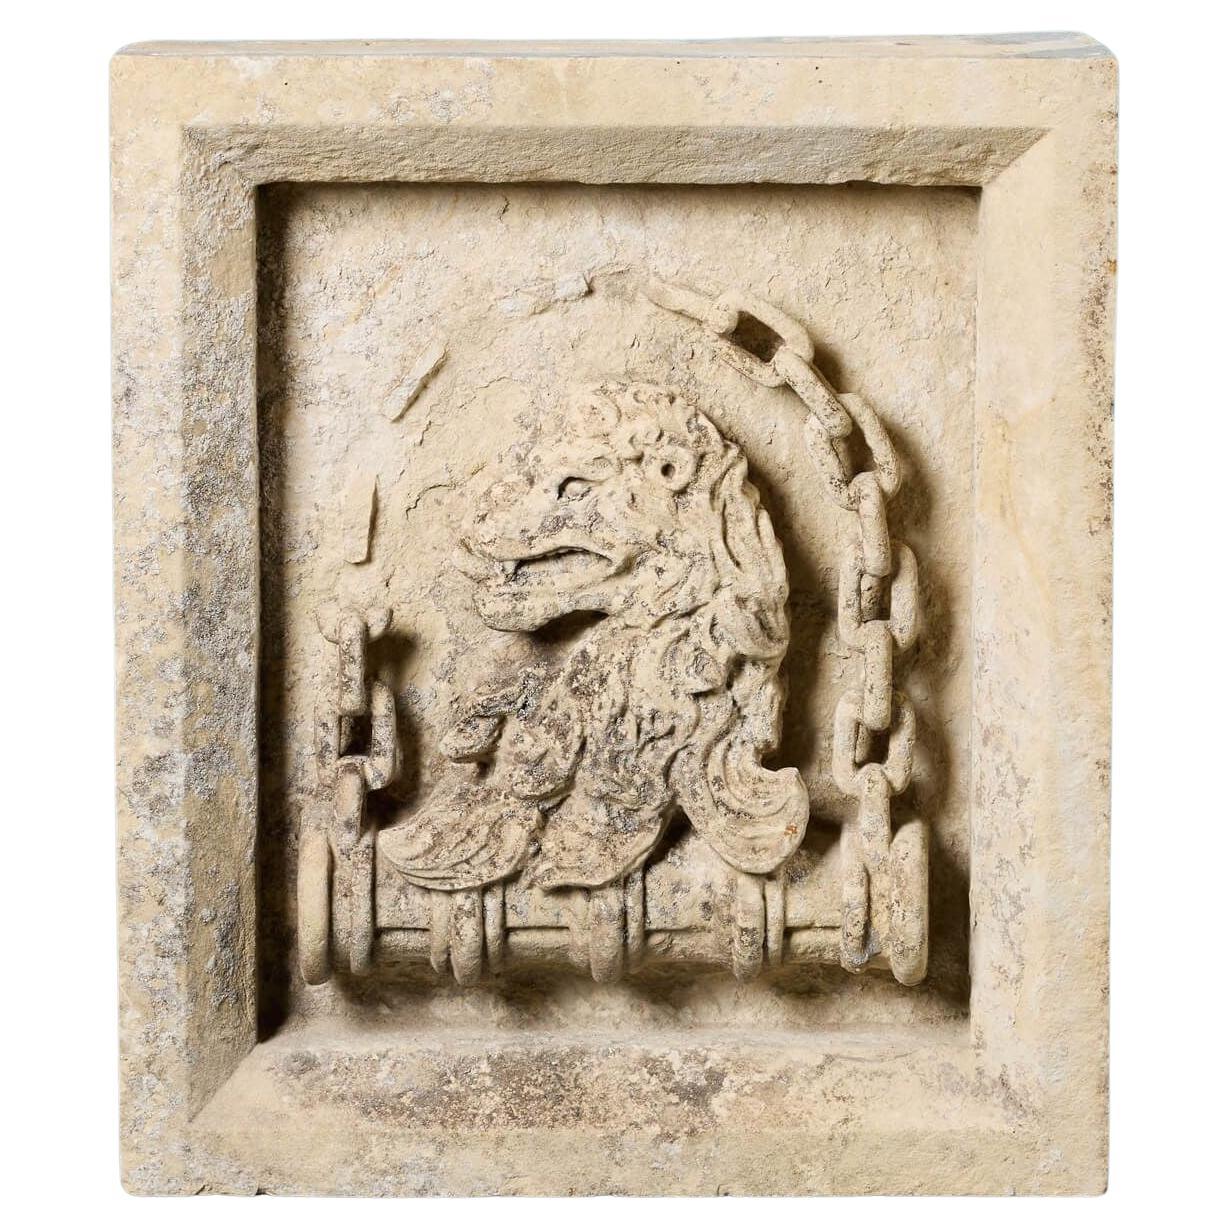 Antique Limestone Lion Plaque or Crest